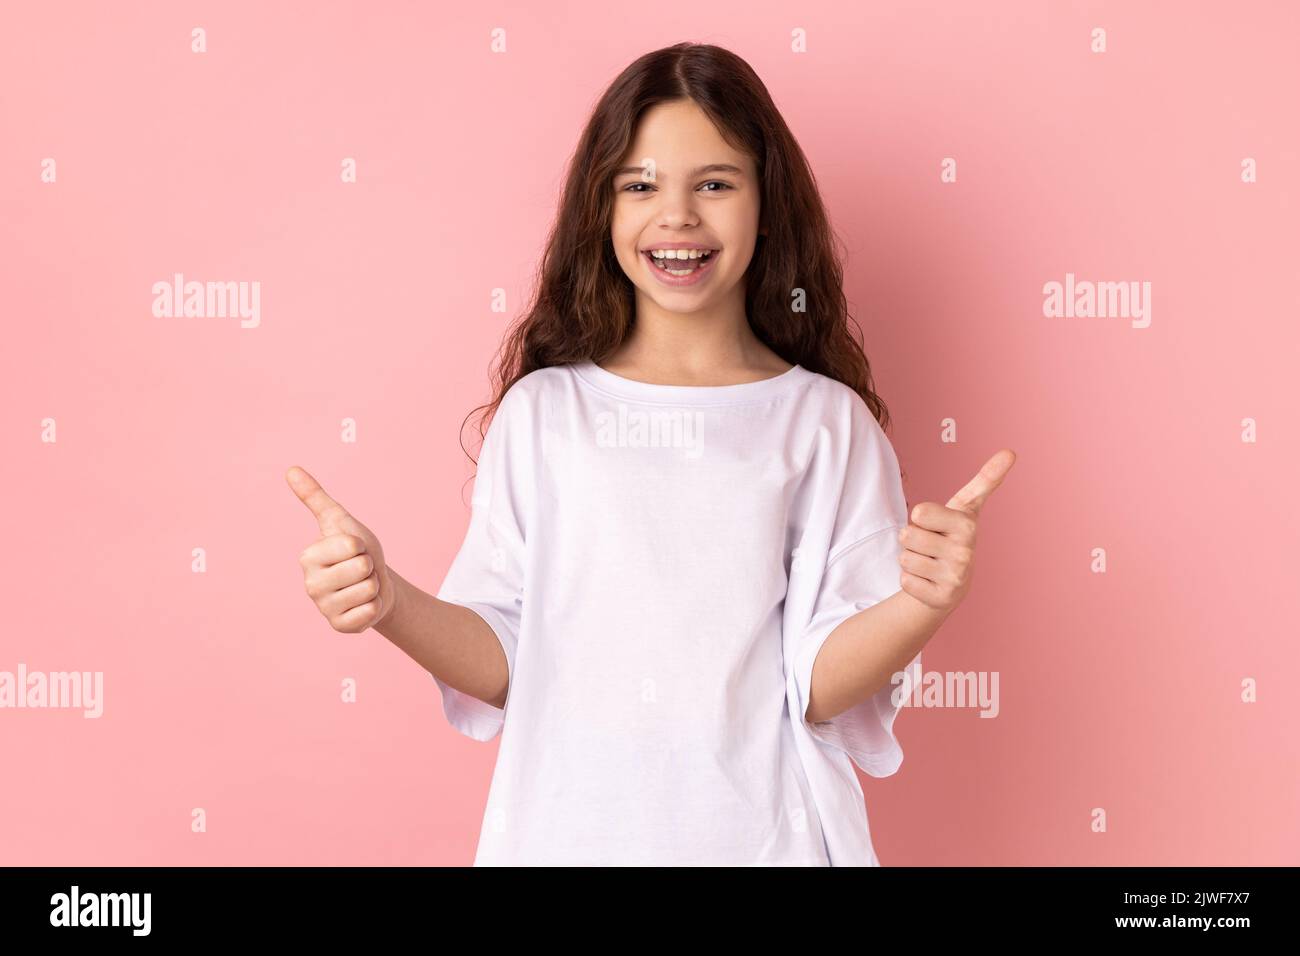 Ritratto di una bambina sorridente che indossa una T-shirt bianca che mostra i pollici, come un gesto, guardando la macchina fotografica dimostrando la sua soddisfazione. Studio in interni isolato su sfondo rosa. Foto Stock